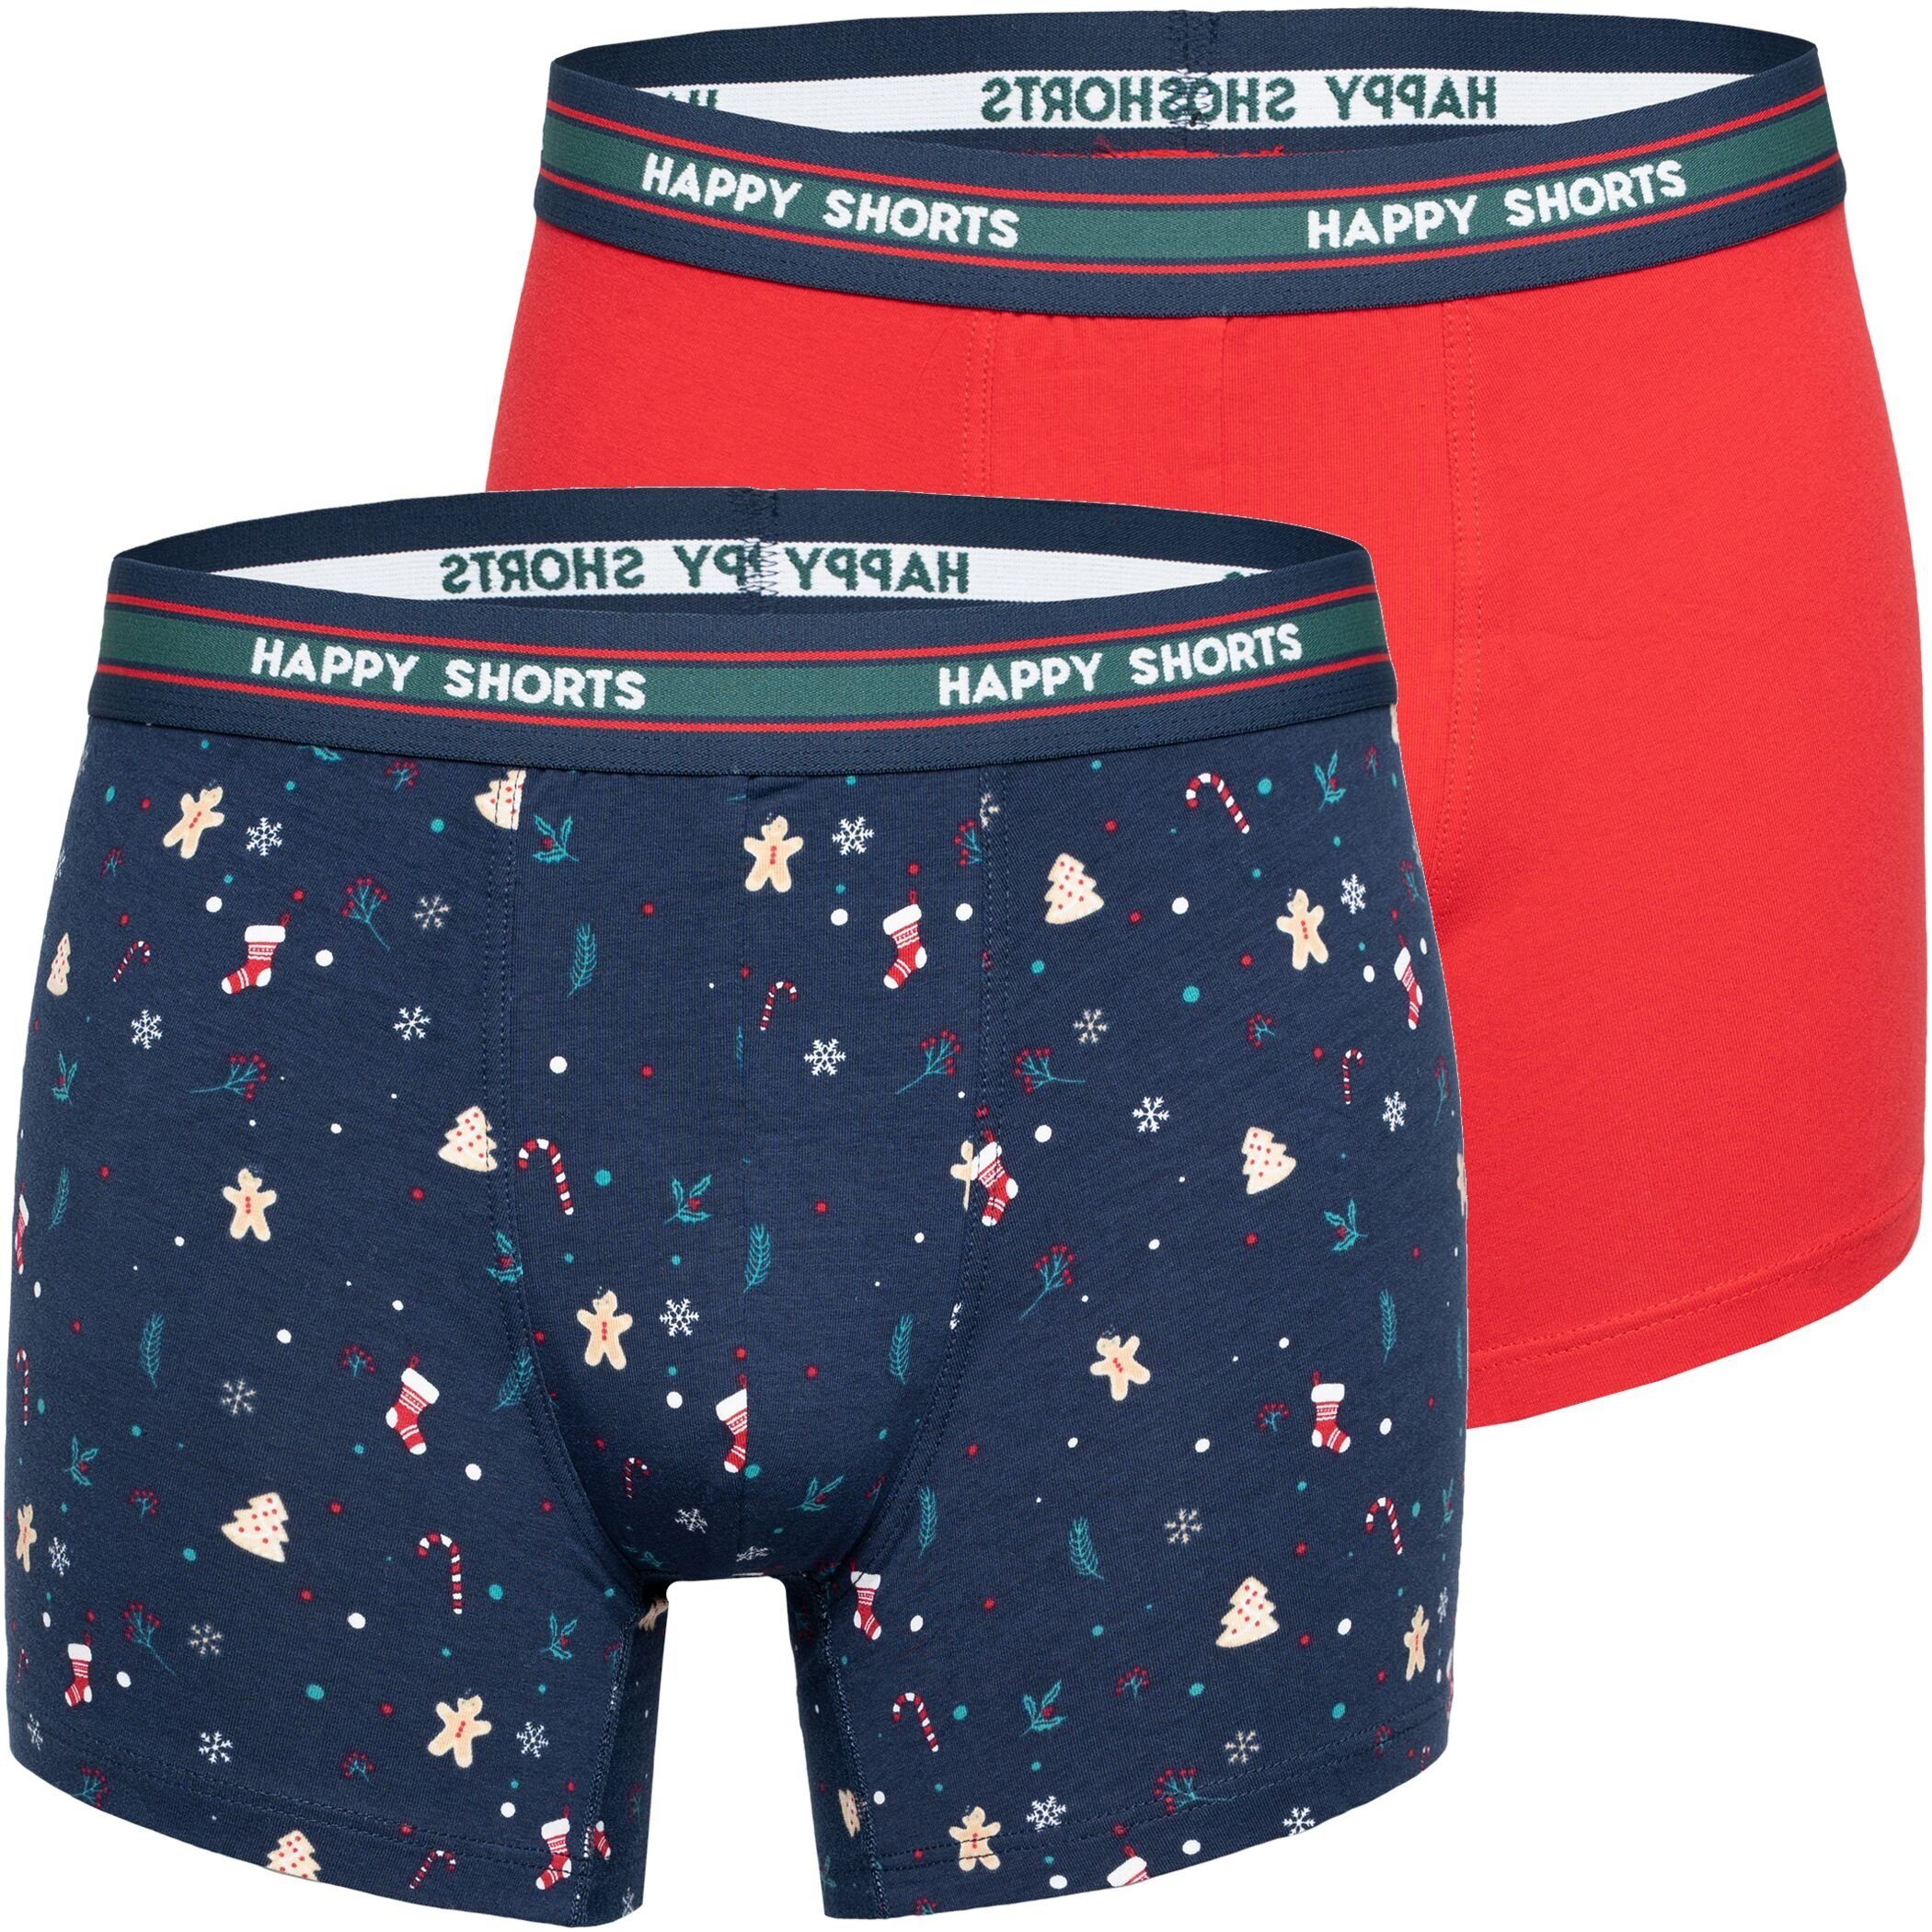 HAPPY SHORTS Trunk 2 Happy Shorts Pants Jersey Trunk Herren Boxershorts Boxer Motiv Lebkuchenmann, Mistelzweig, Schneeflocke (1-St) Christmas Stuff